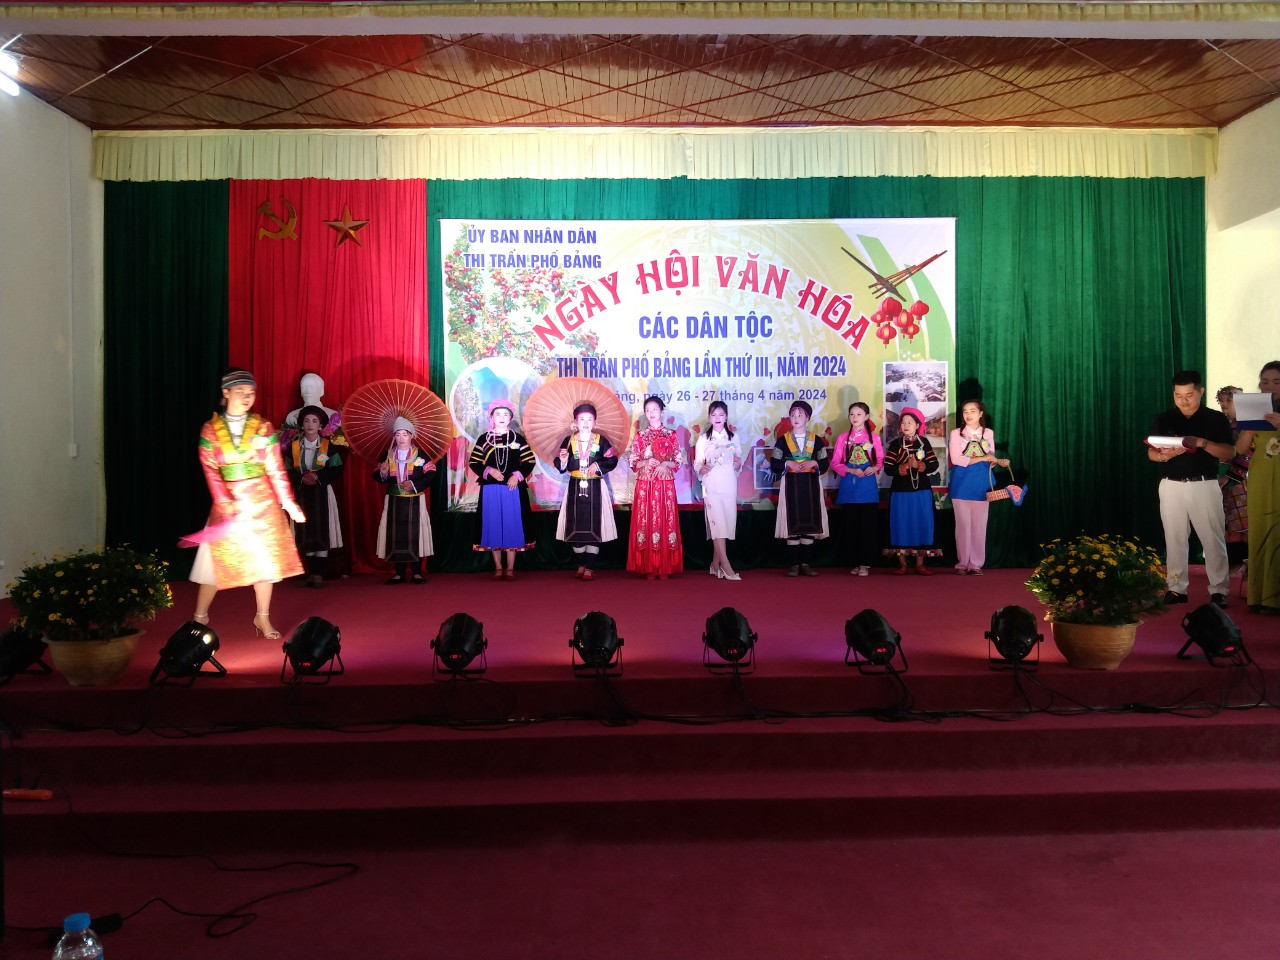 Thị trấn Phố Bảng tổ chức ngày hội văn hóa các dân tộc lần thứ 3 năm 2024